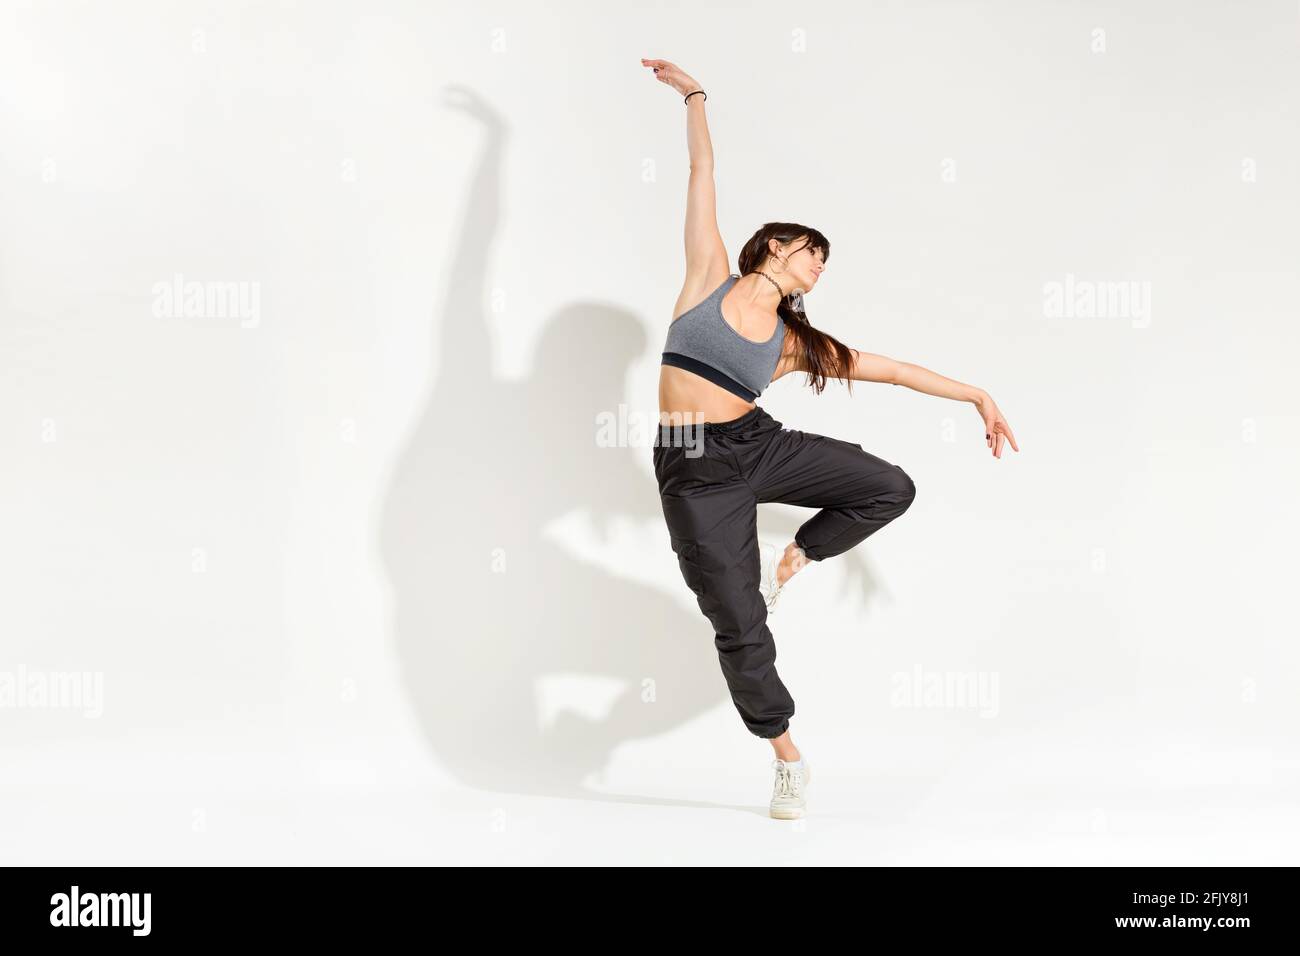 Anmutige junge Tänzerin in einem Hip-Hop-Outfit Eine klassische Tanzpose mit ausgestreckten Armen, die auf einem balancieren Bein mit künstlerischem Schatten auf einem Stockfoto